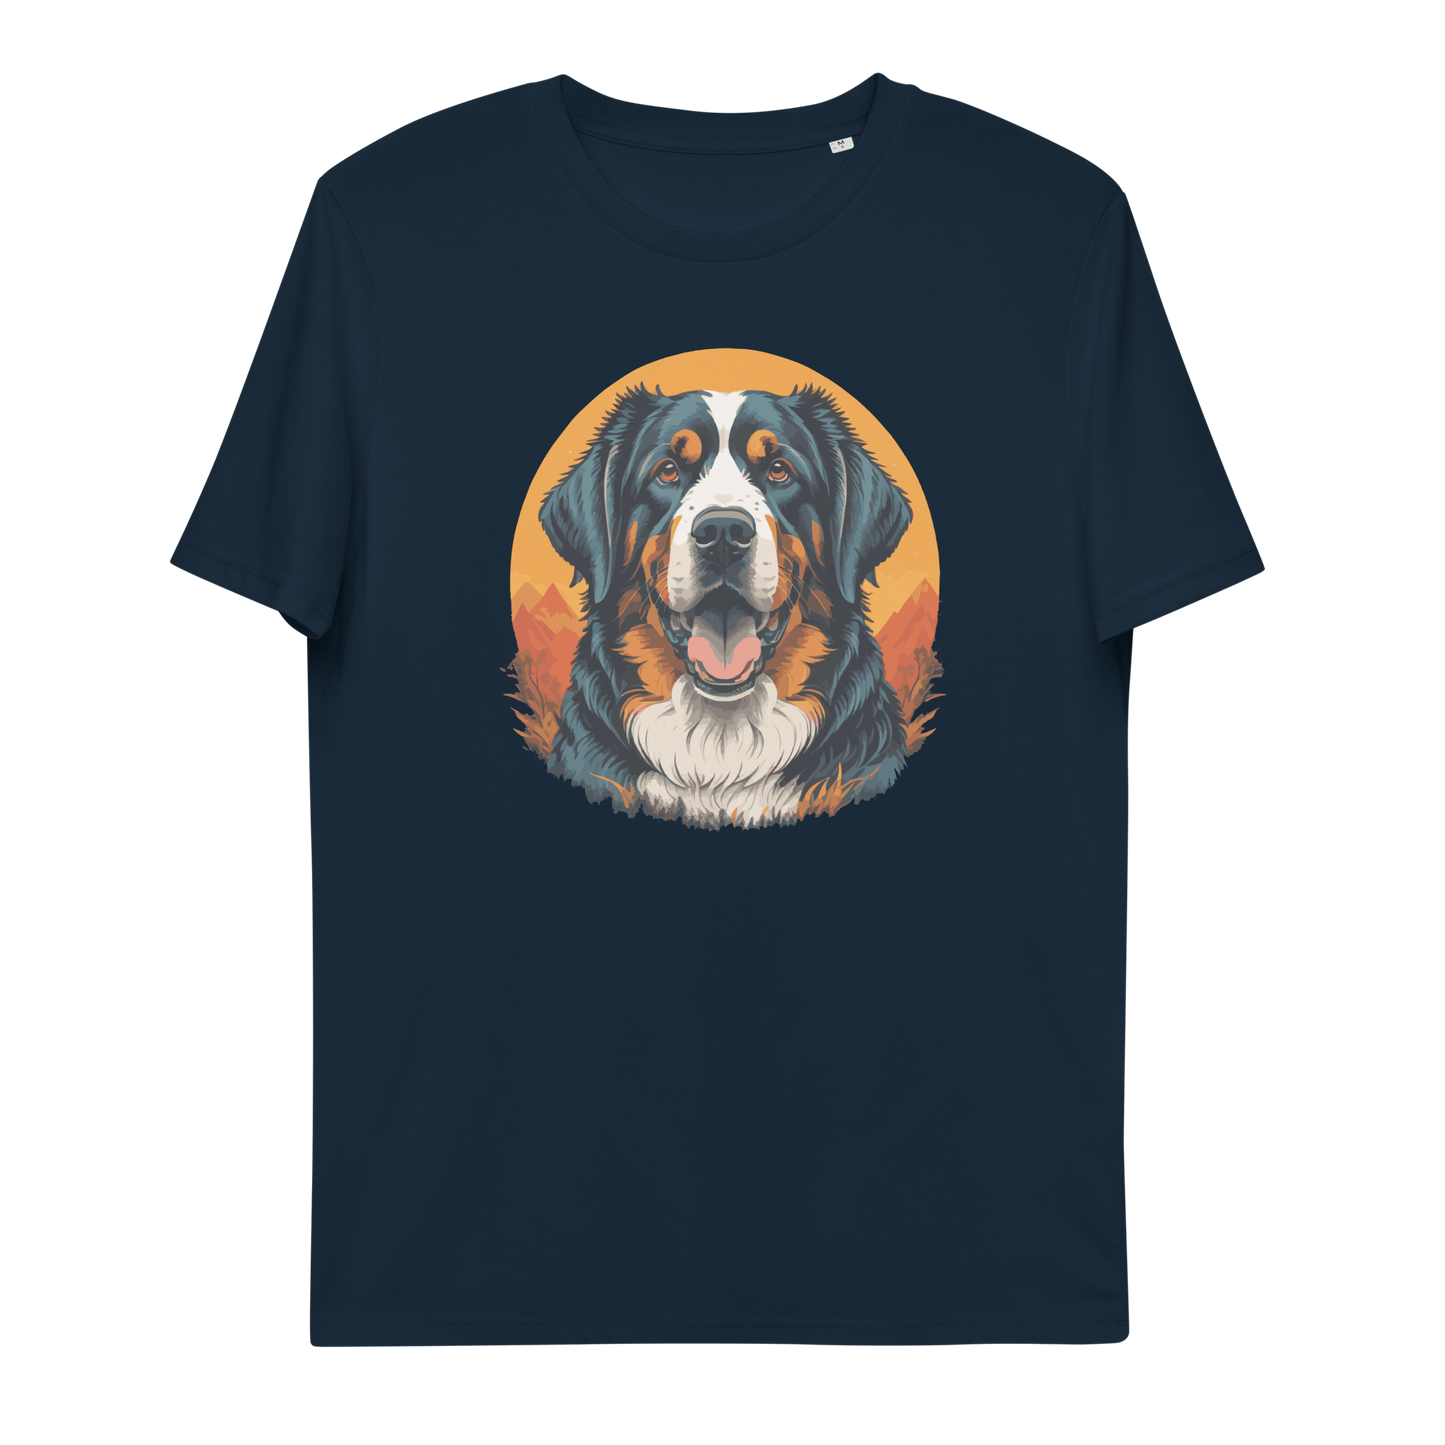 Unisex-Bio-Baumwoll-T-Shirt (Berner Sennenhund)